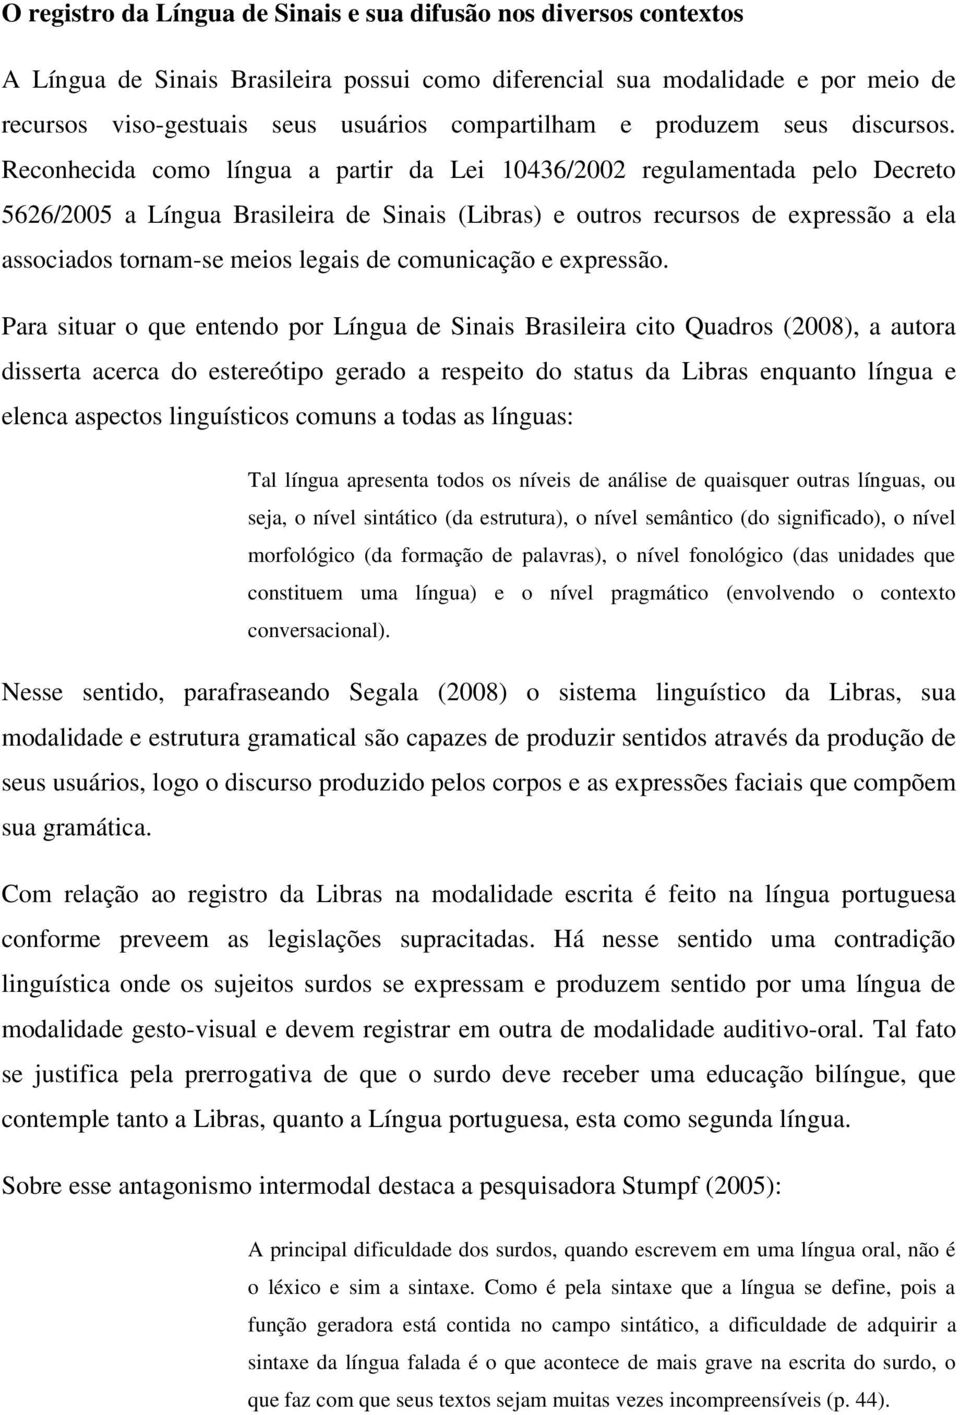 Reconhecida como língua a partir da Lei 10436/2002 regulamentada pelo Decreto 5626/2005 a Língua Brasileira de Sinais (Libras) e outros recursos de expressão a ela associados tornam-se meios legais